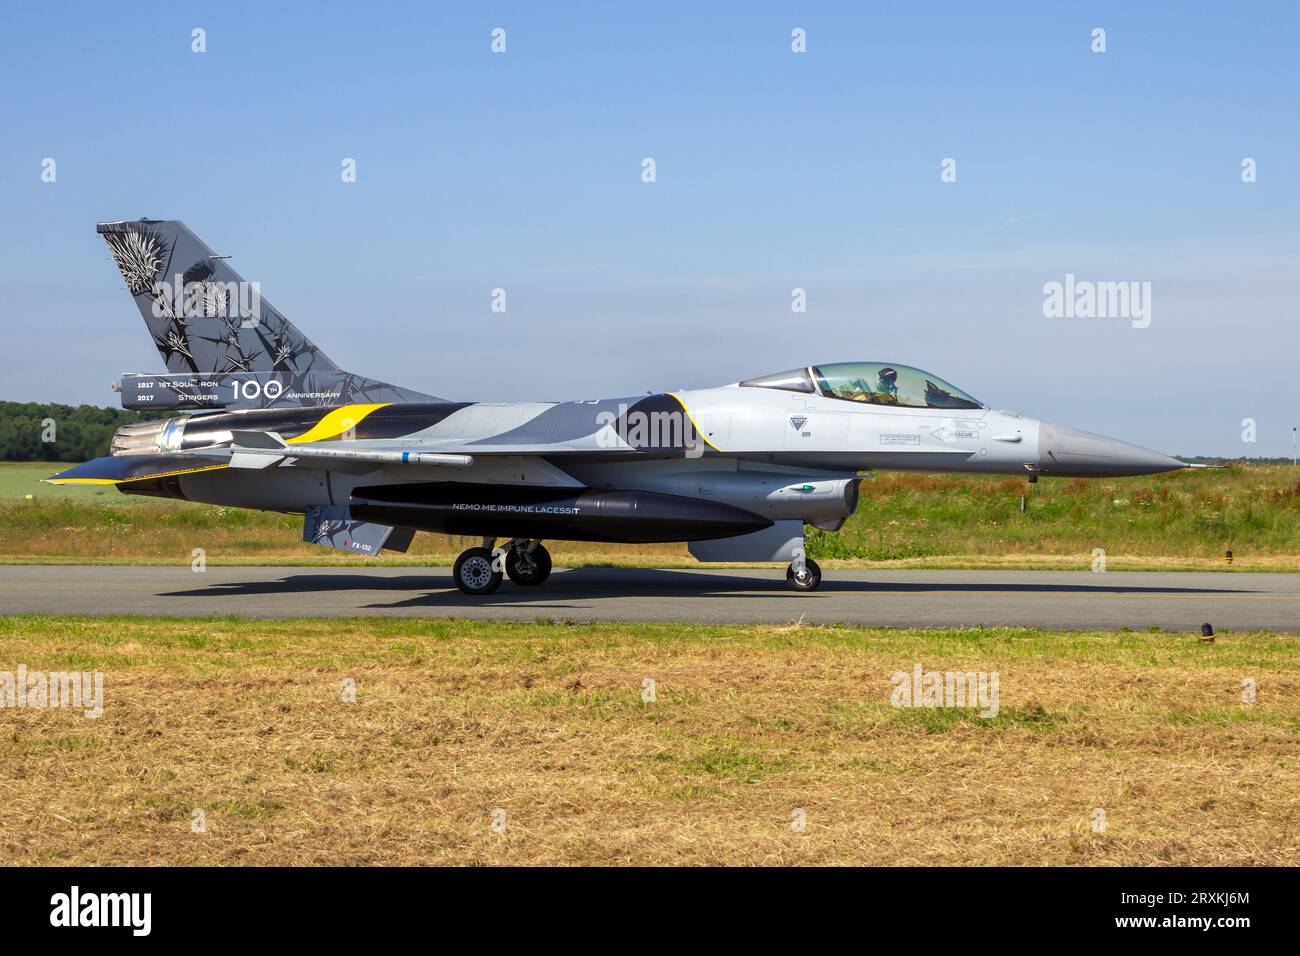 Avion de chasse F-16 de la Force aérienne belge en train de rouler sur la piste de la base aérienne de Florennes, Belgique - 15 juin 2017 Banque D'Images